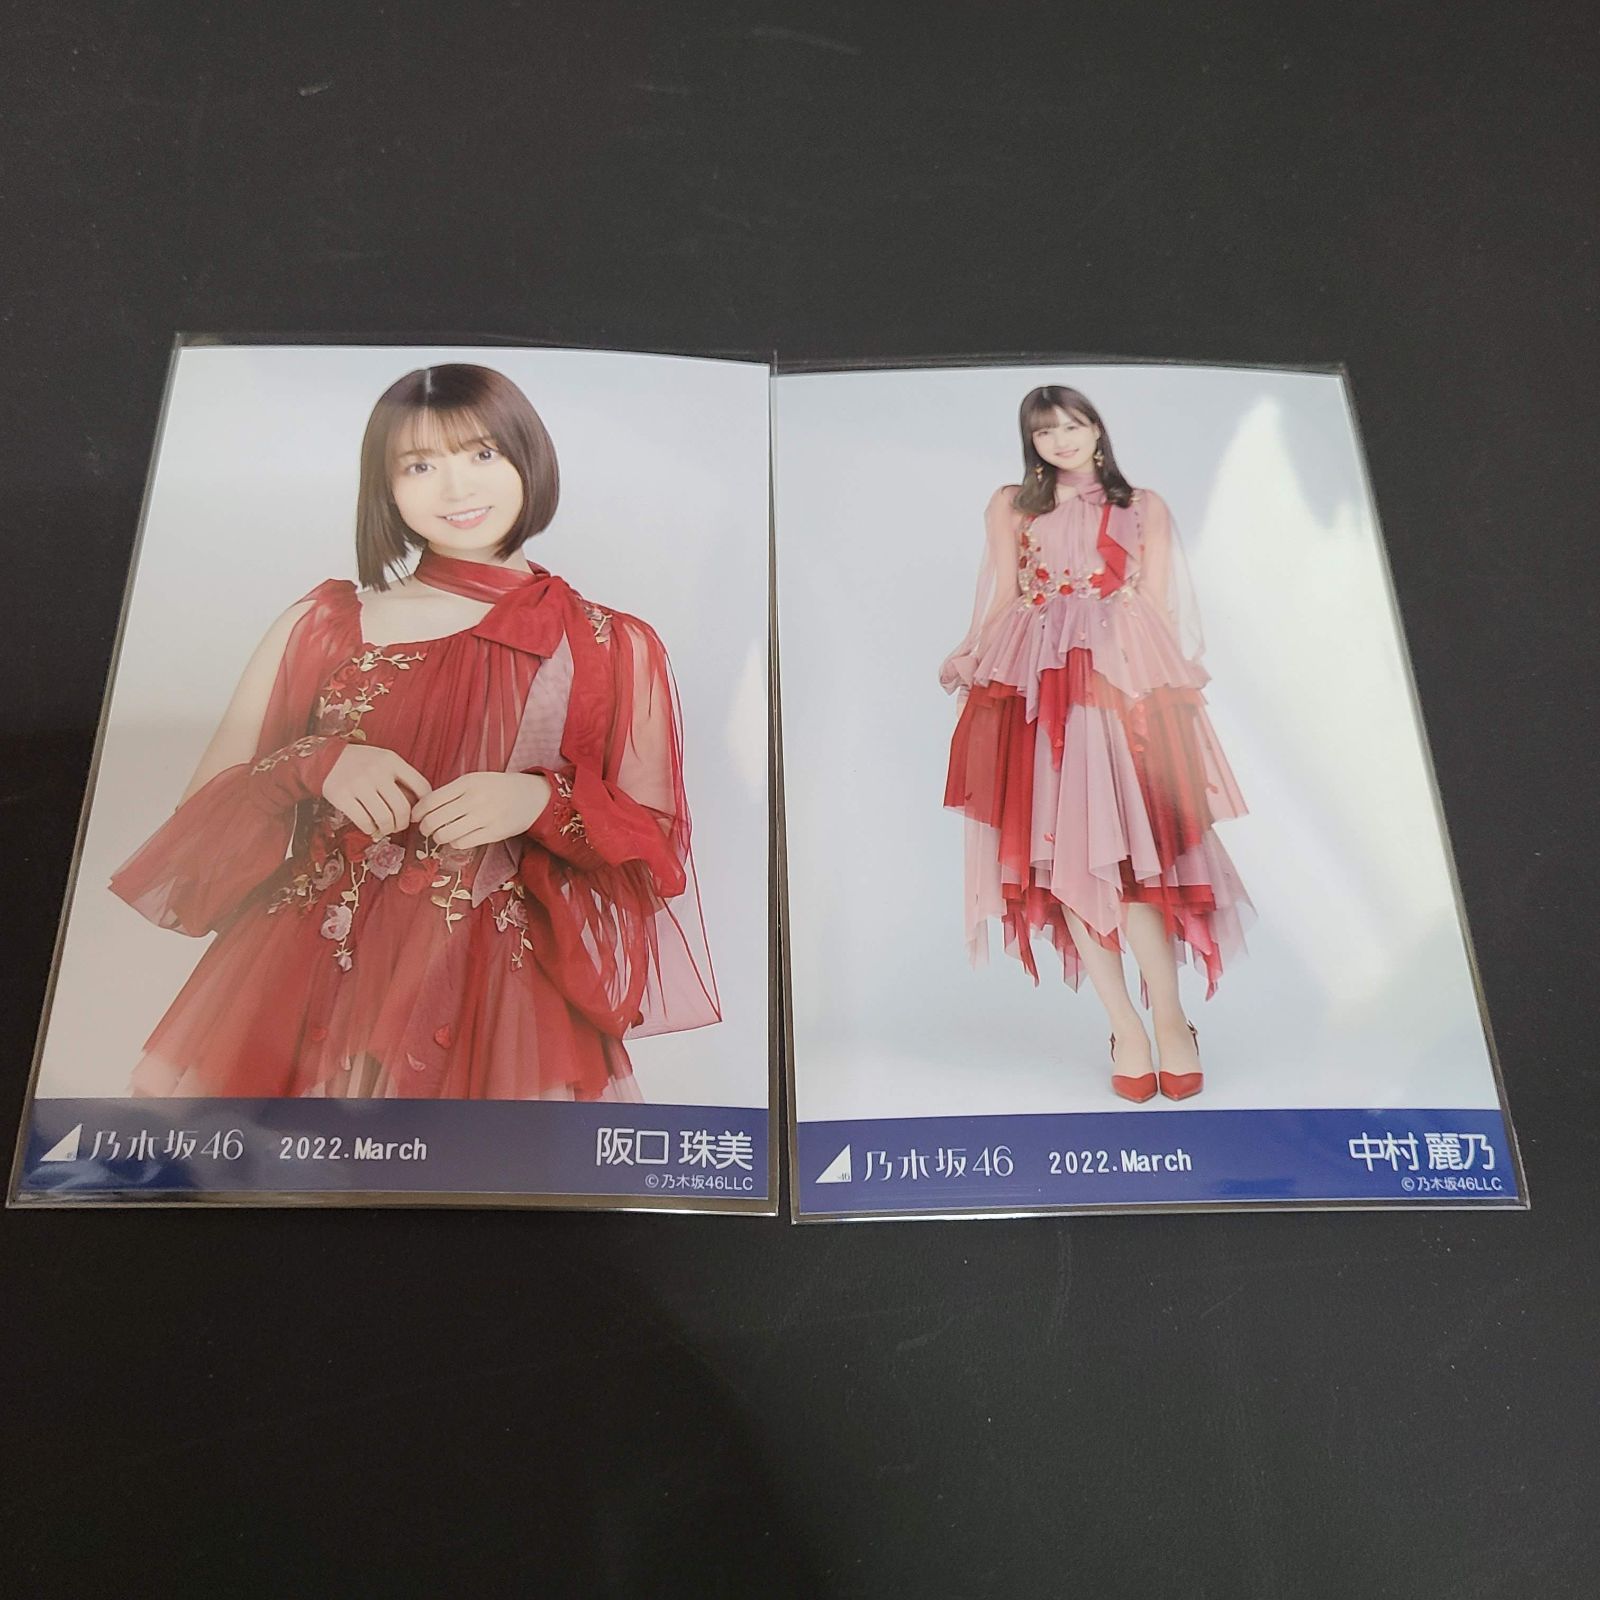 乃木坂46 紅白2021衣装1 バラ、セミコンプ 鈴木絢音ヨリ等 生写真 